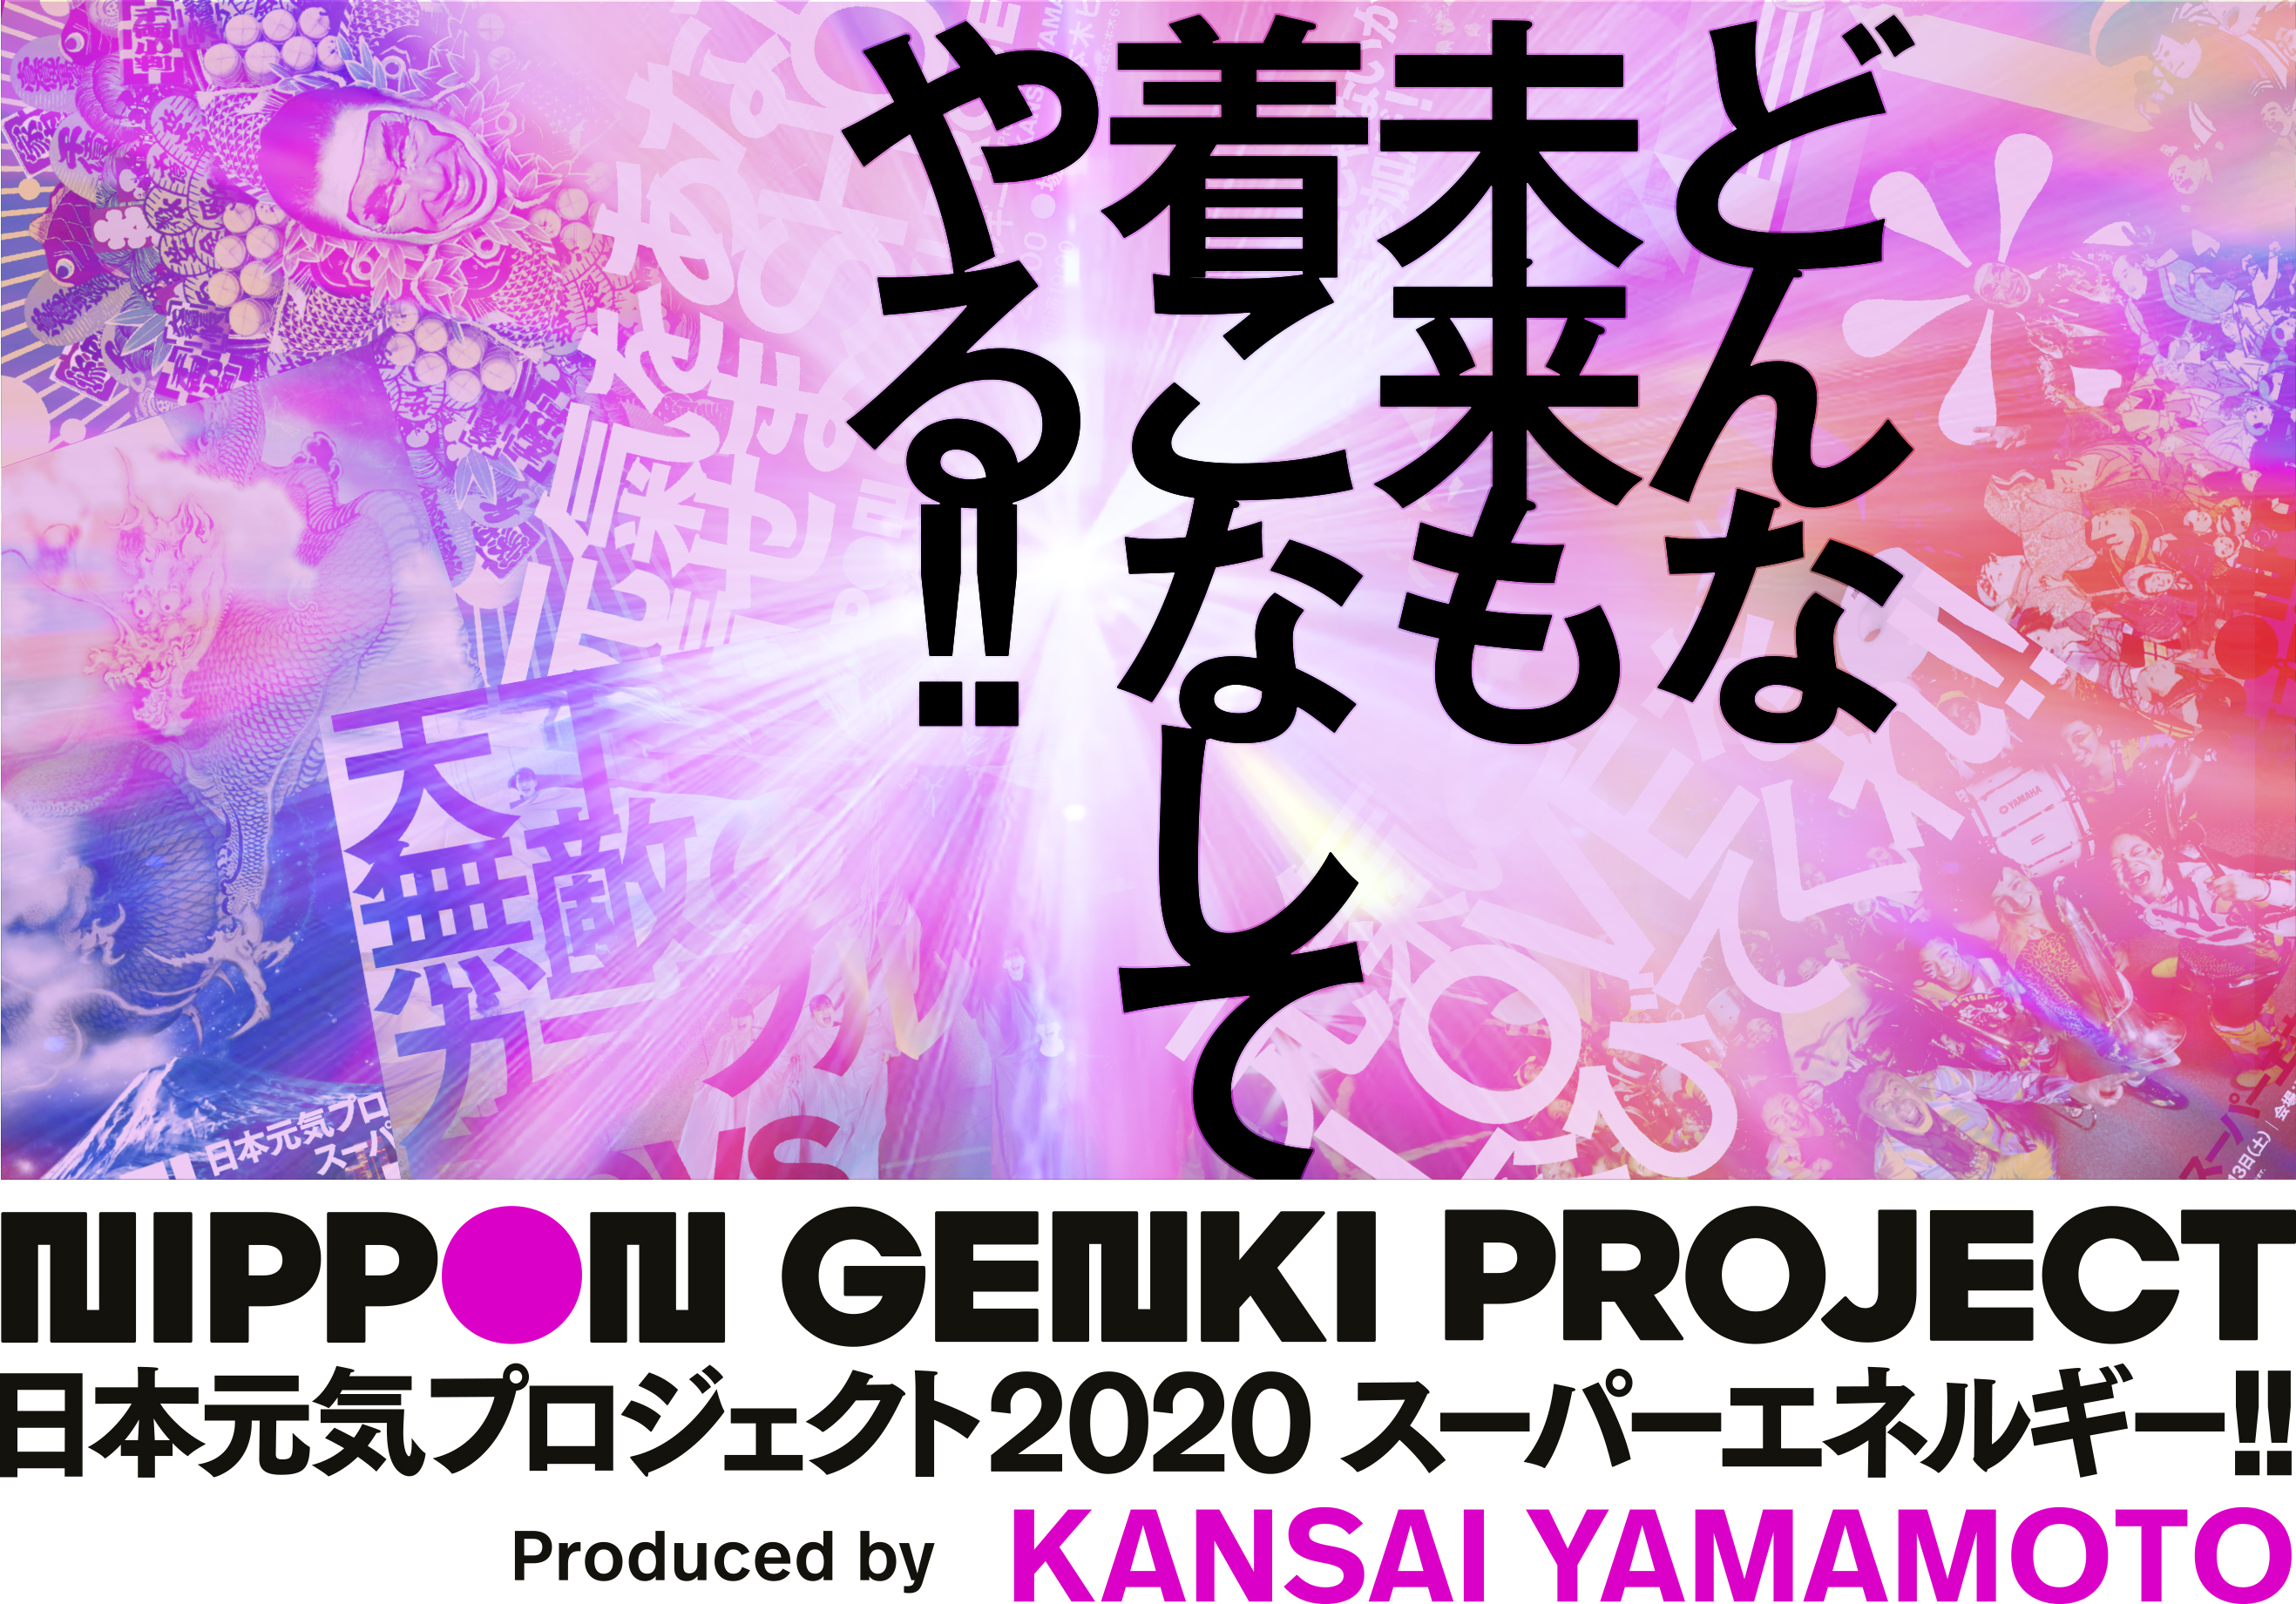 日本元気プロジェクト2020 スーパーエネルギー‼ Produced by KANSAI YAMAMOTO 山本寛斎の思いが詰まったオンラインイベントの詳細をレポート！